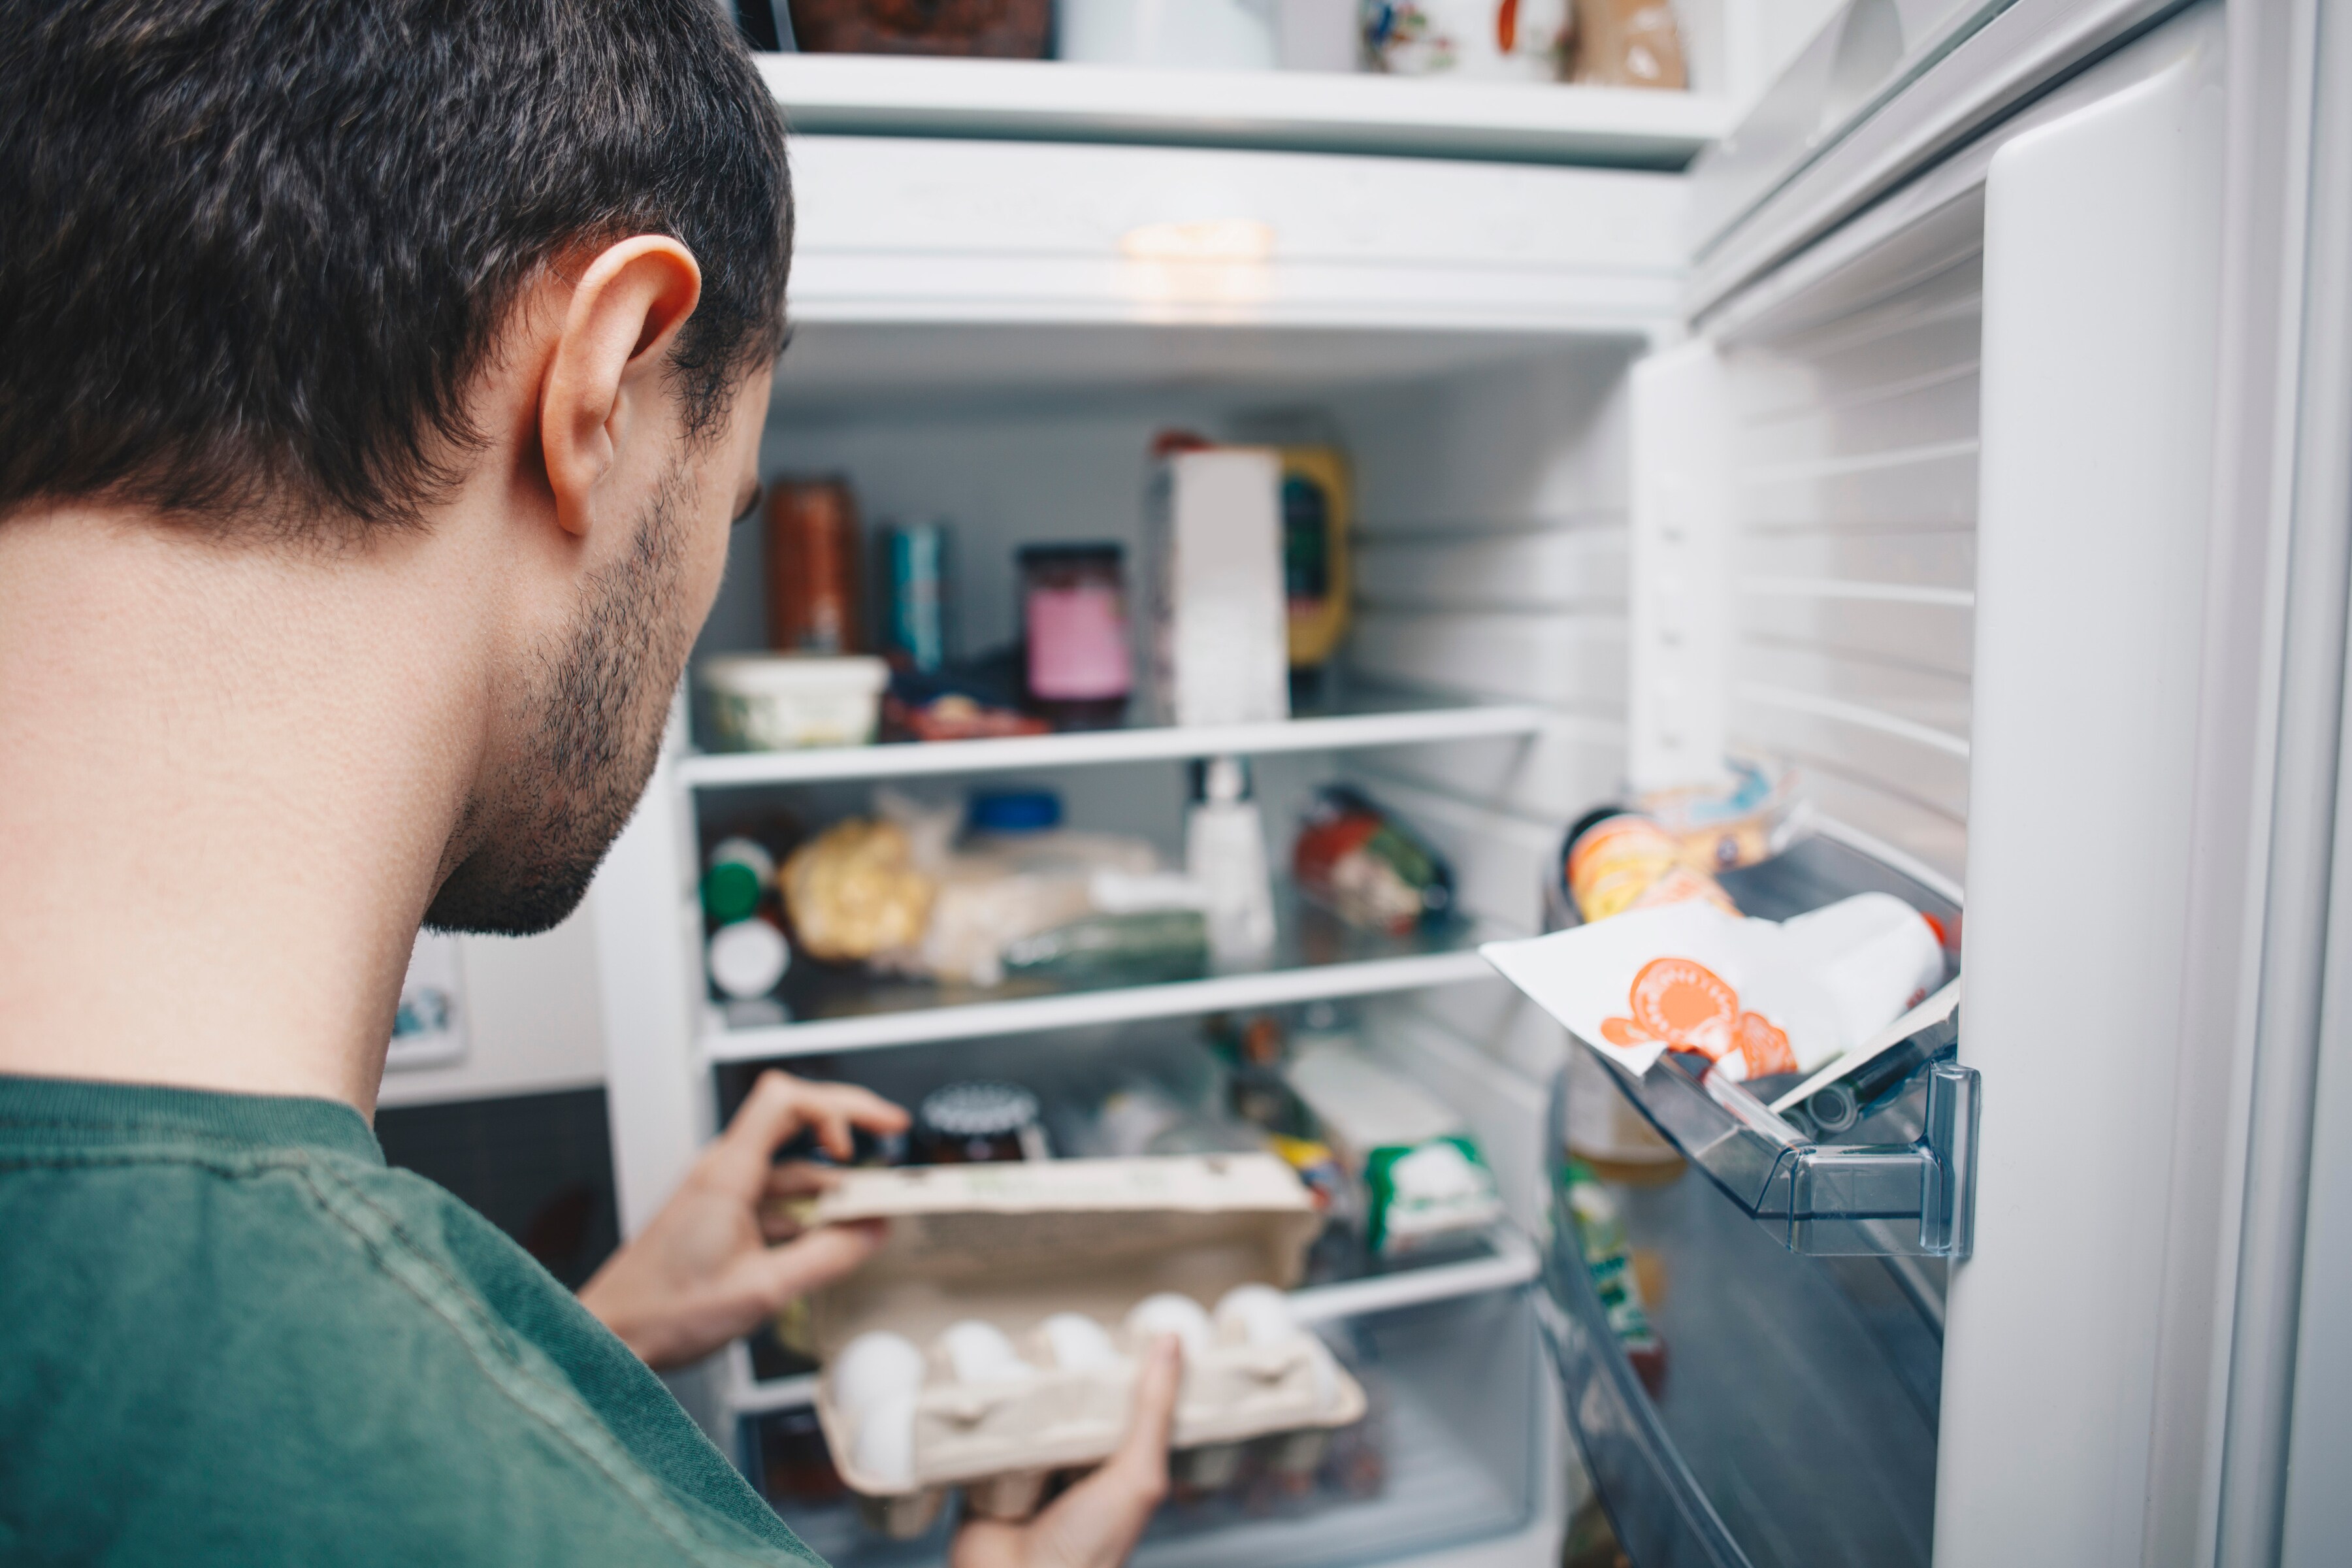 Køleskabe - guides og artikler | Elgiganten